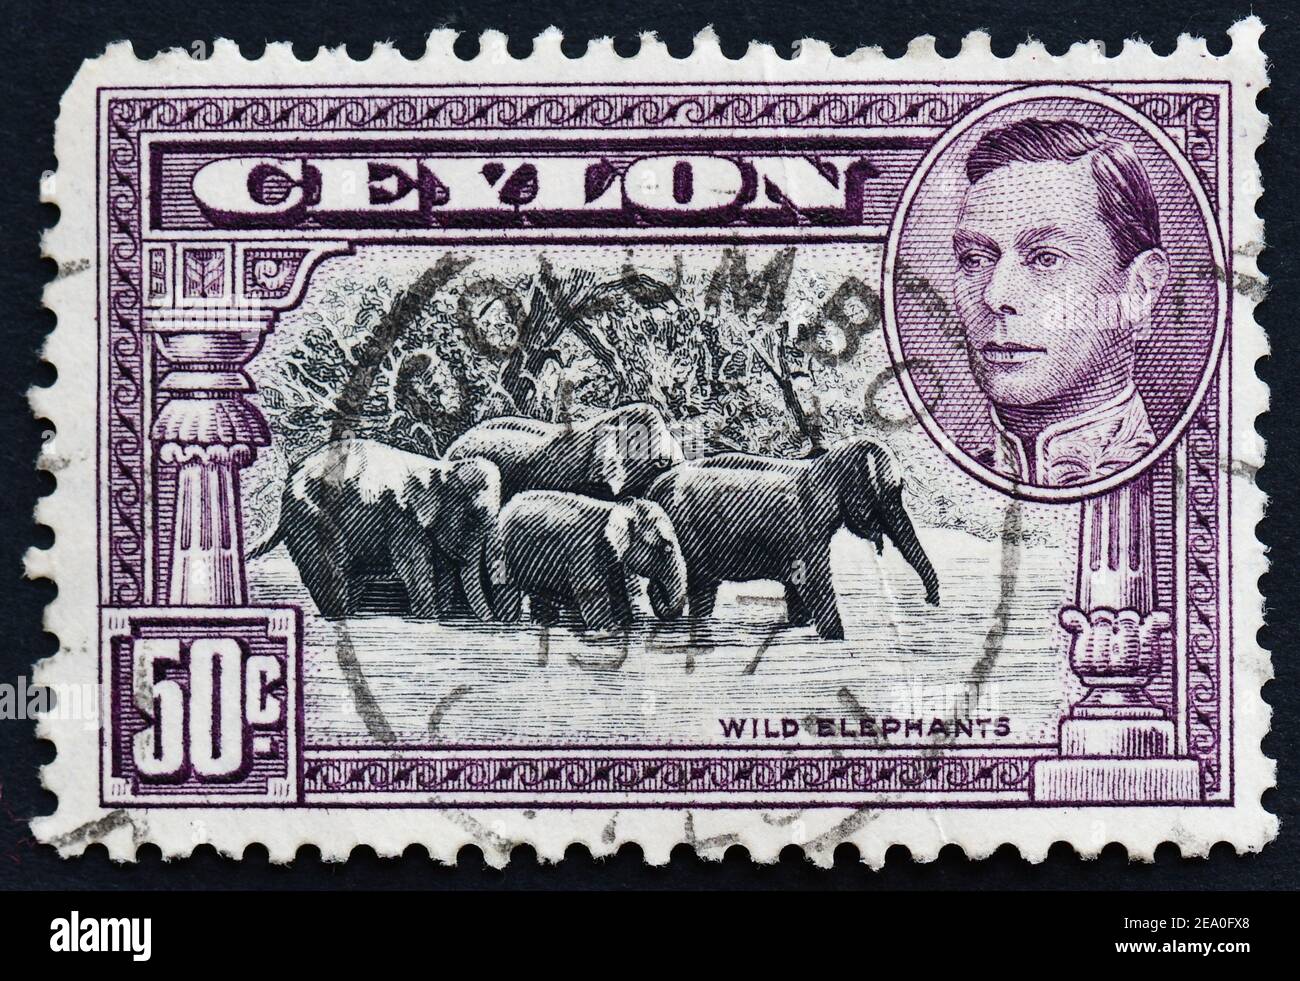 Sello postal de Ceilán con elefantes salvajes y George VI Foto de stock